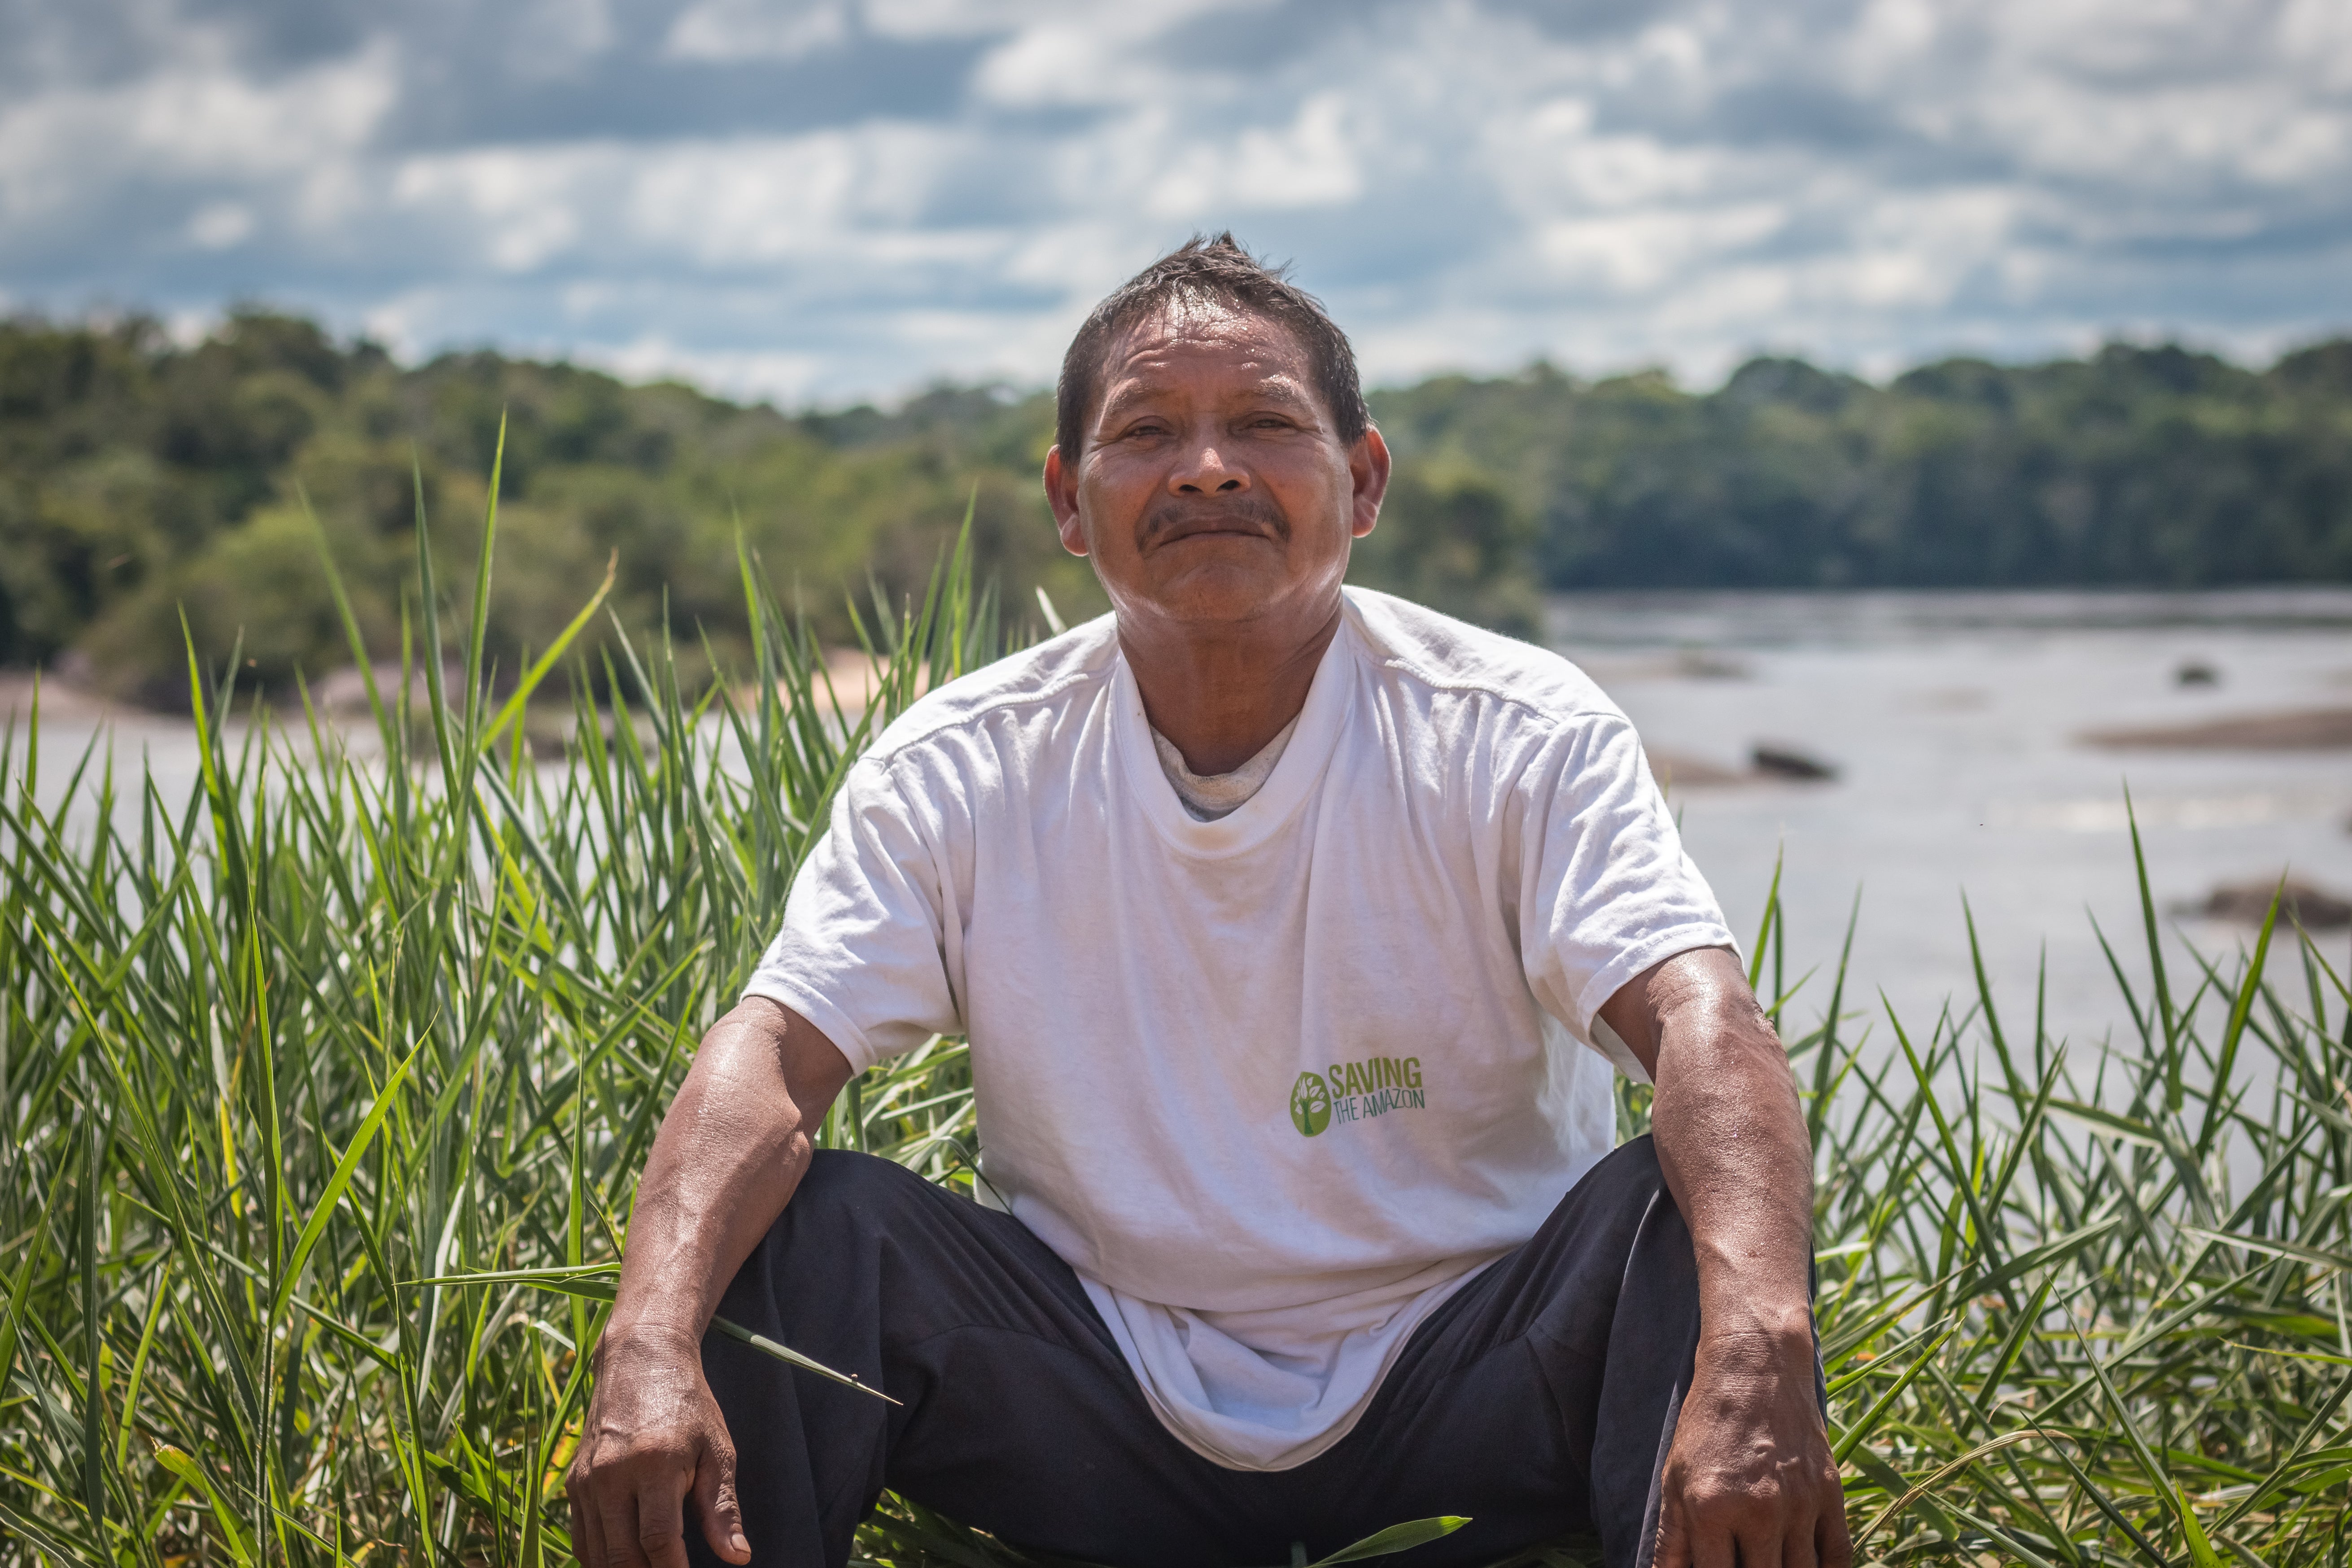 Saving the Amazon y comunidades indígenas